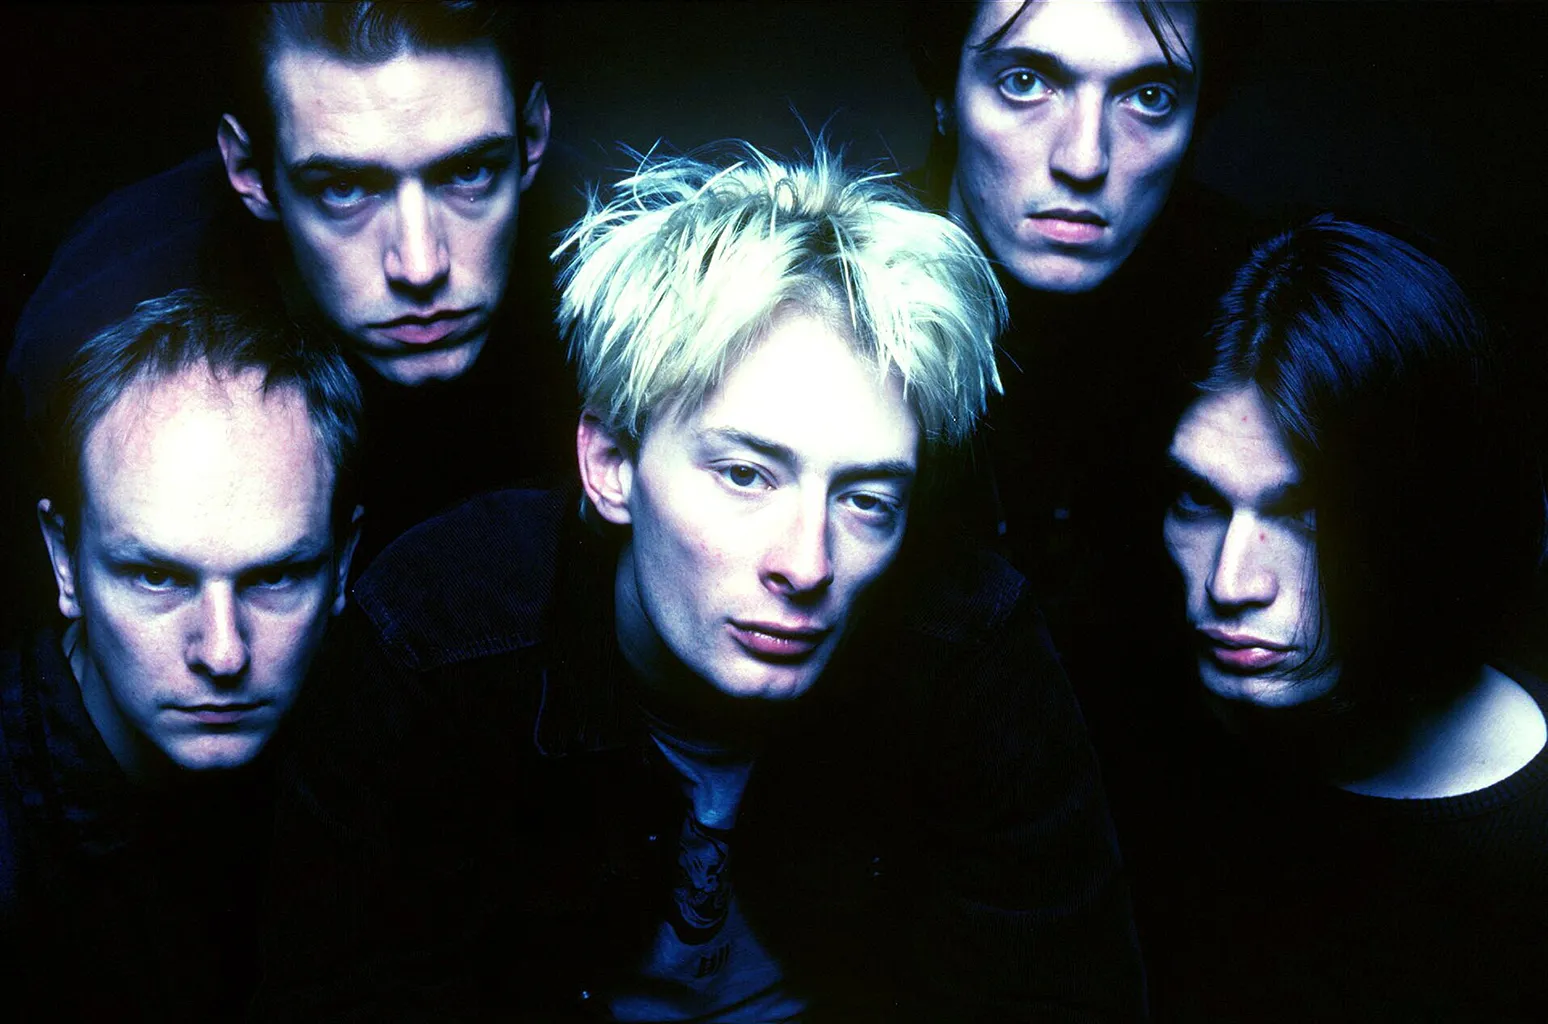 英国摇滚乐队Radiohead(电台司令)1992-2017发行专辑、EP、现场辑合集[无损FLAC/DVDs/eBooks/73.90GB]百度云盘打包下载 影音资源 第2张